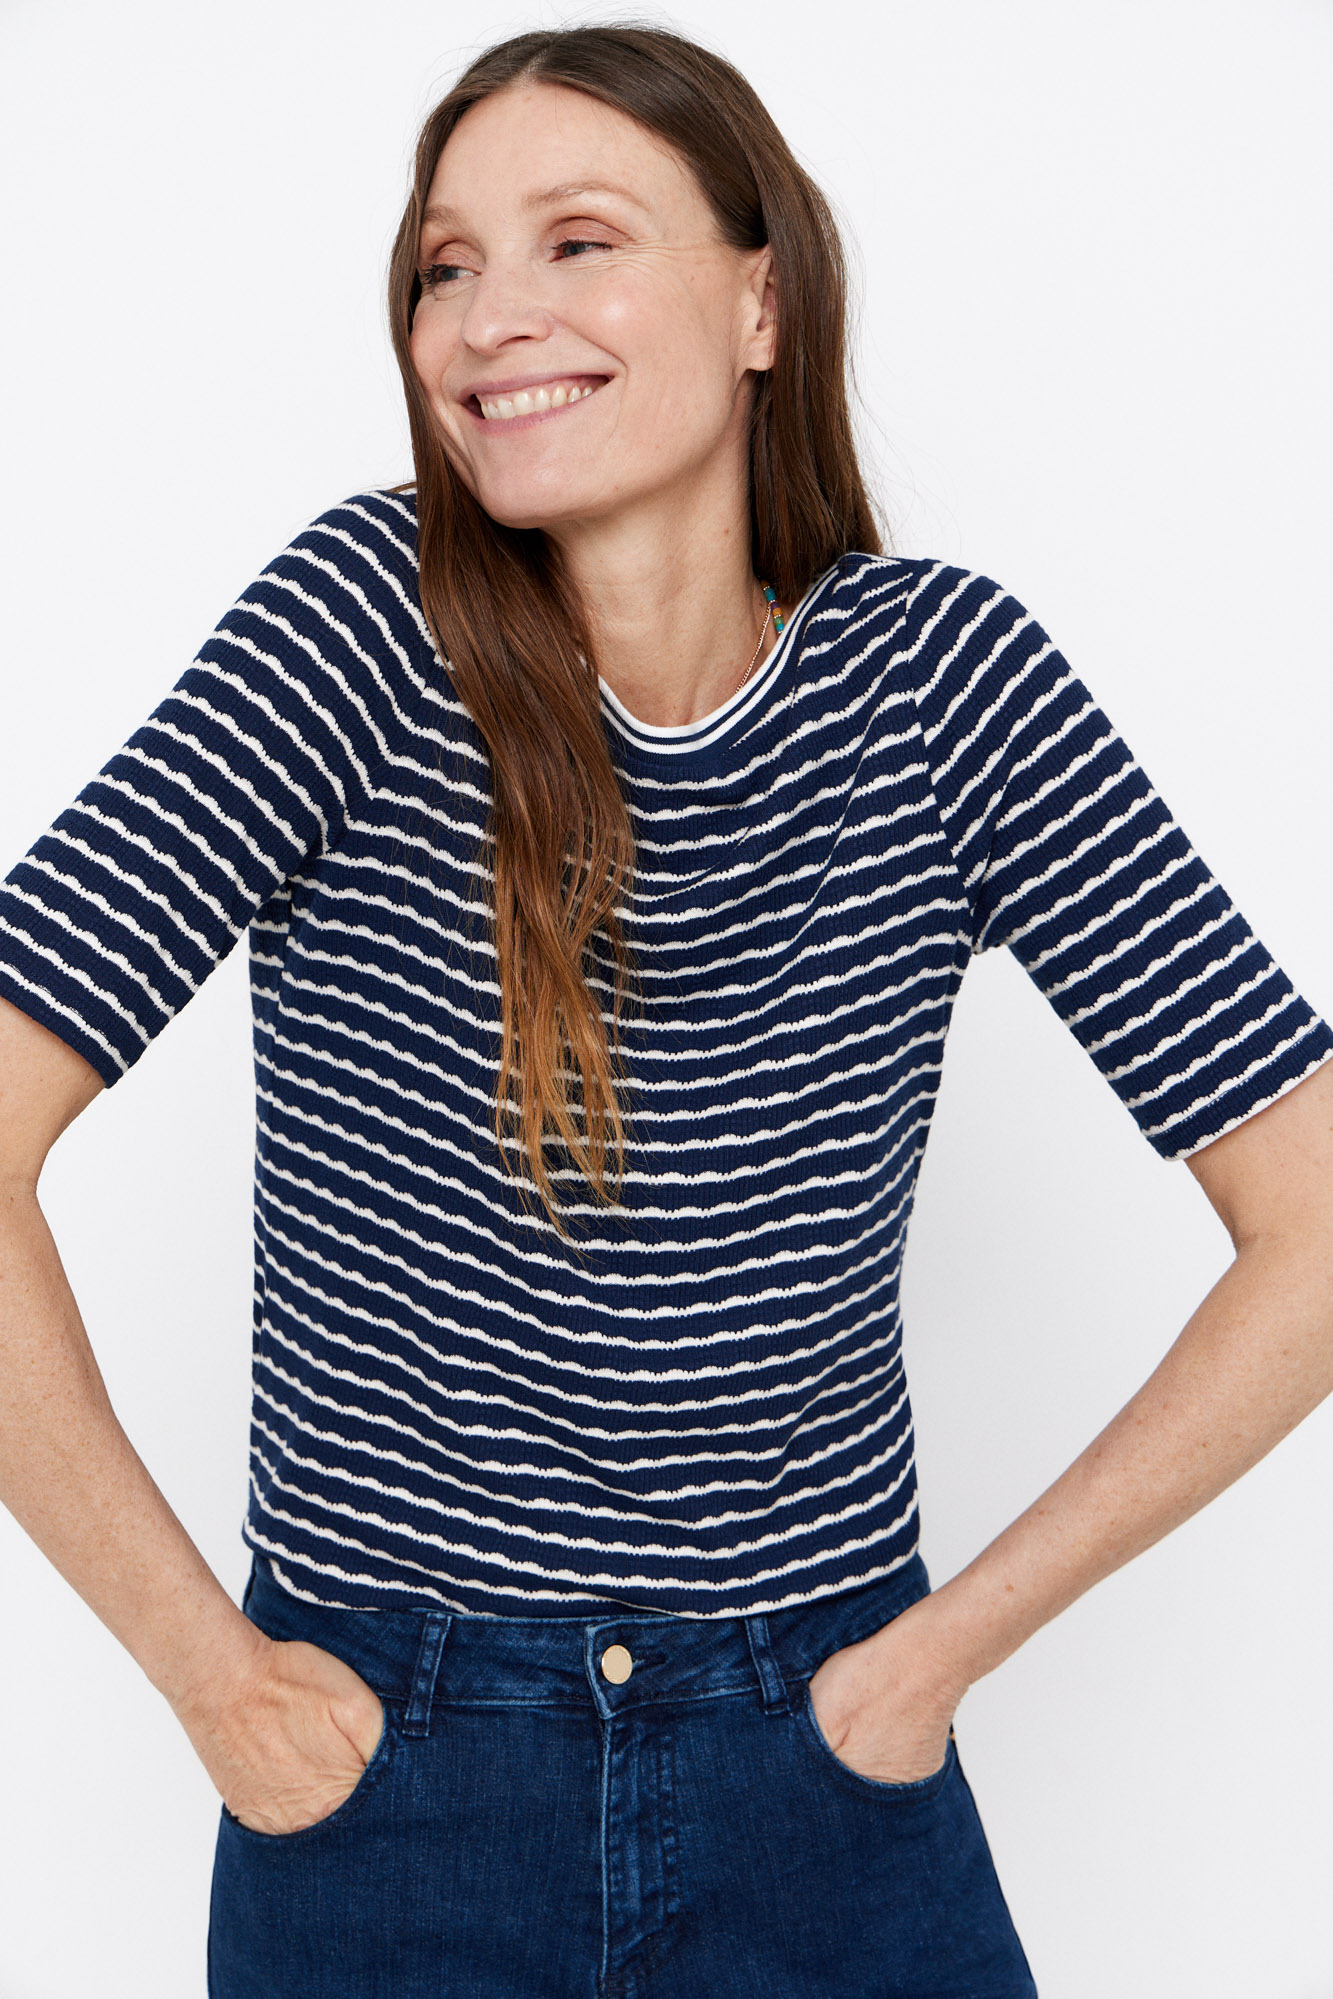 FITZ + EDDI Striped T-Shirt - Women's T-Shirts in Sage